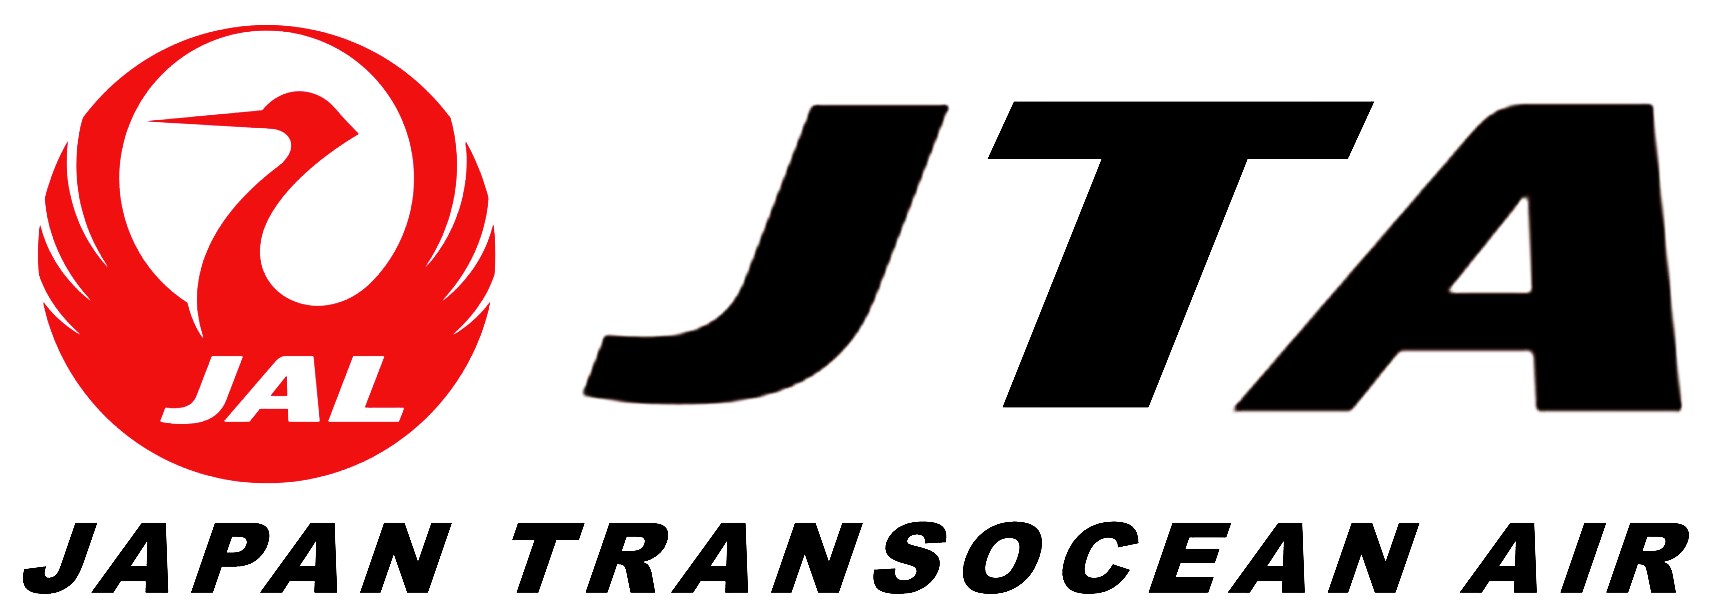 JTA - Japan Transocean Air
Keywords: Japan Transocean Air